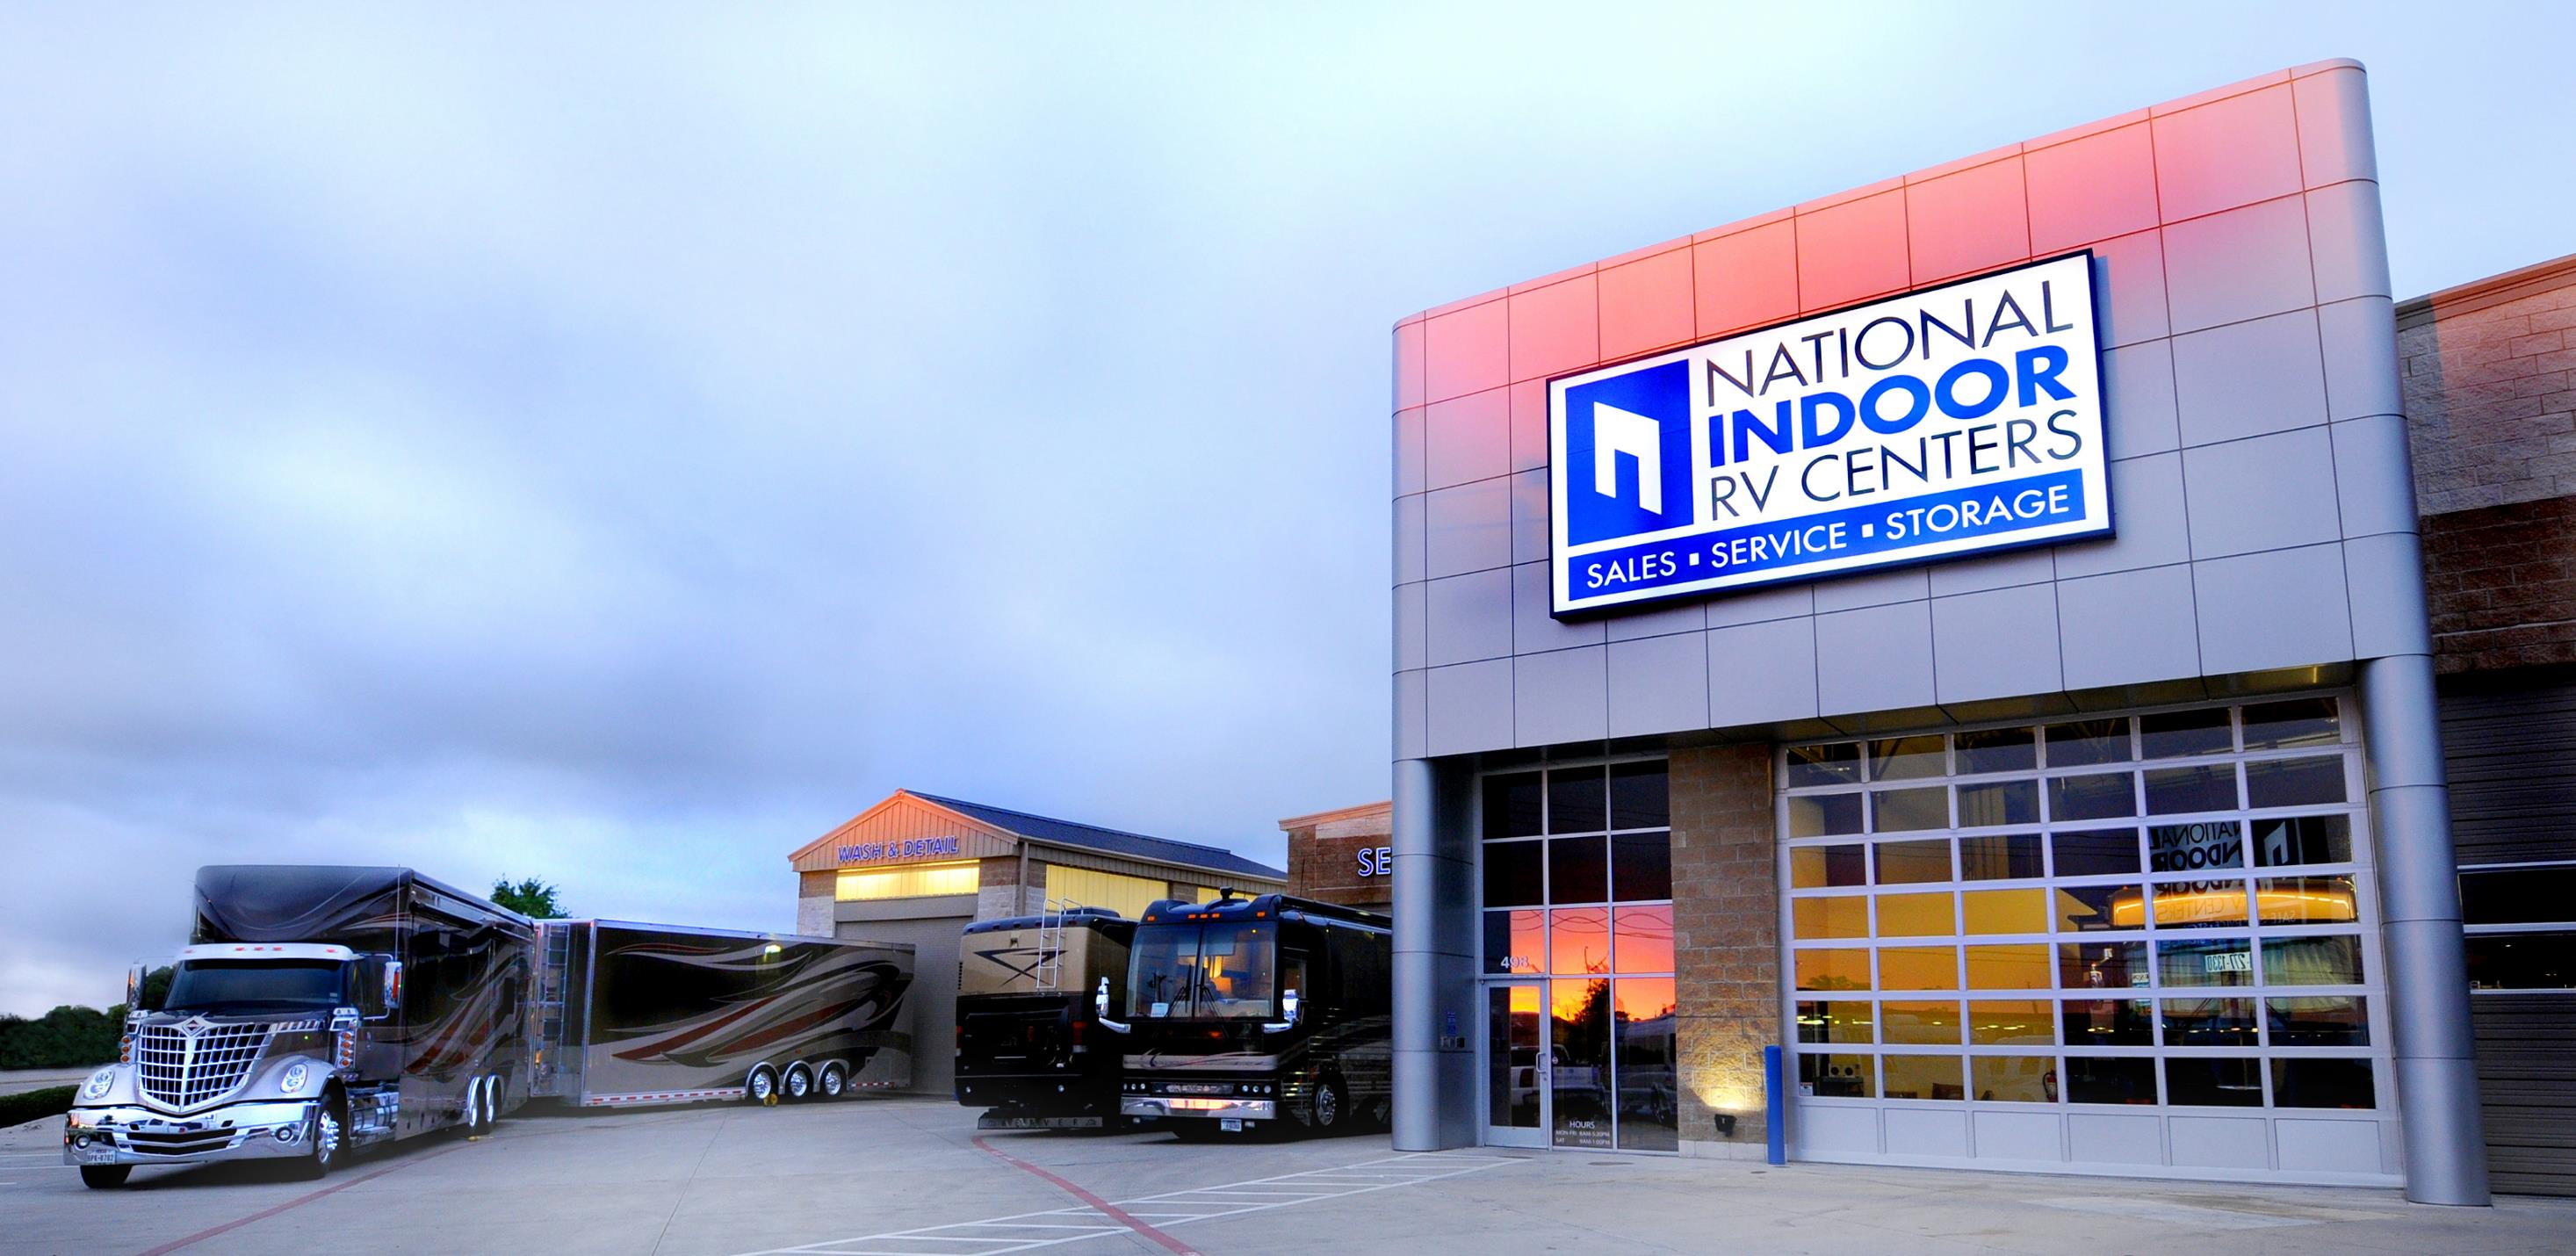 Featured Dealer: National Indoor RV Centers